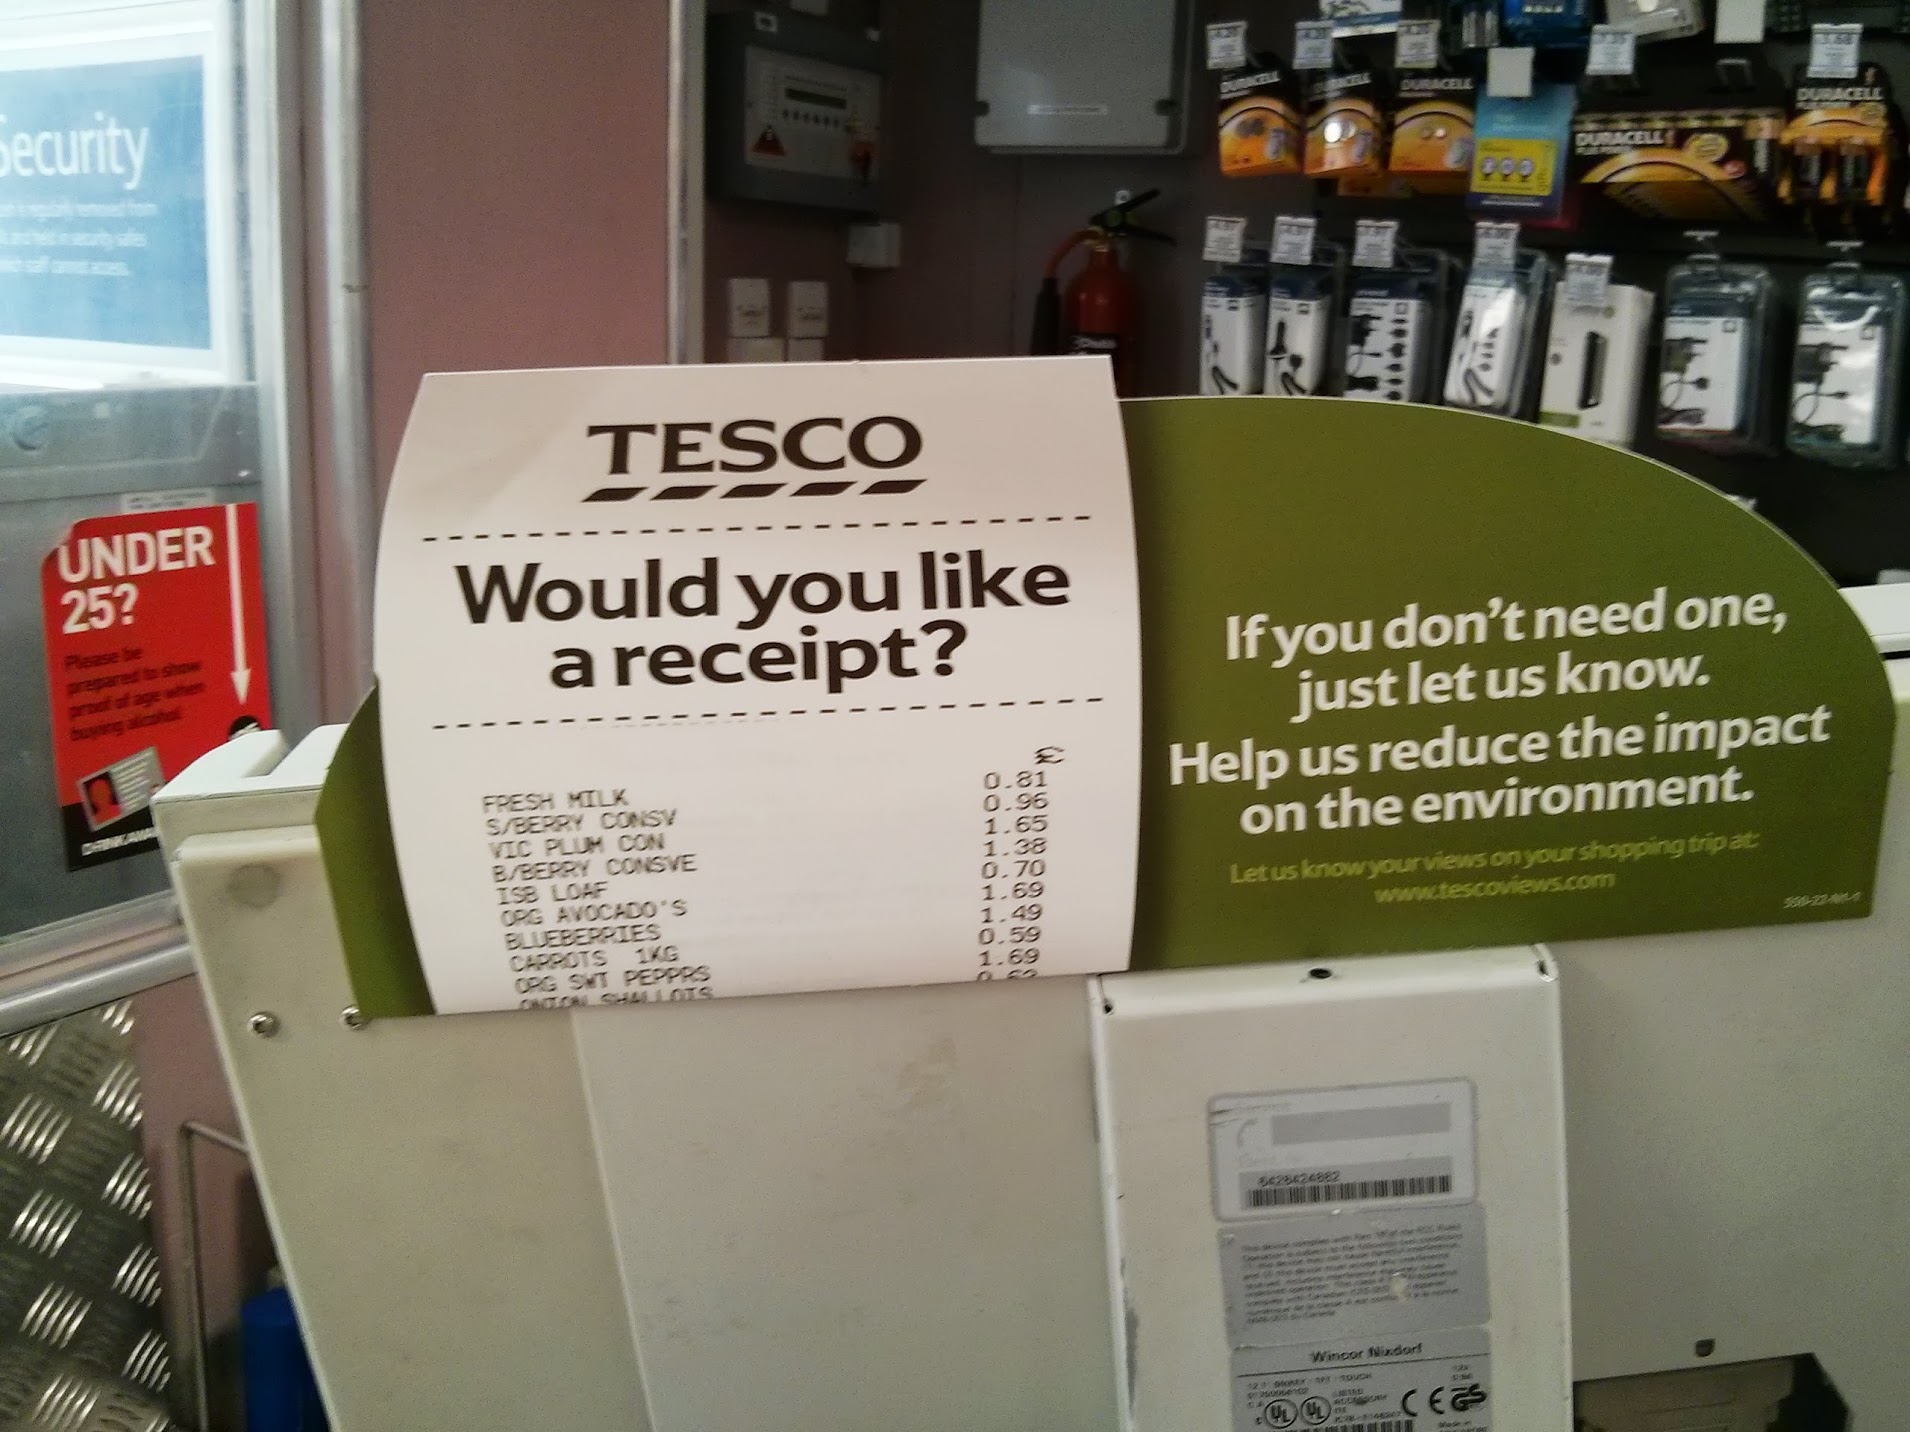 Tesco - Would you like a receipt